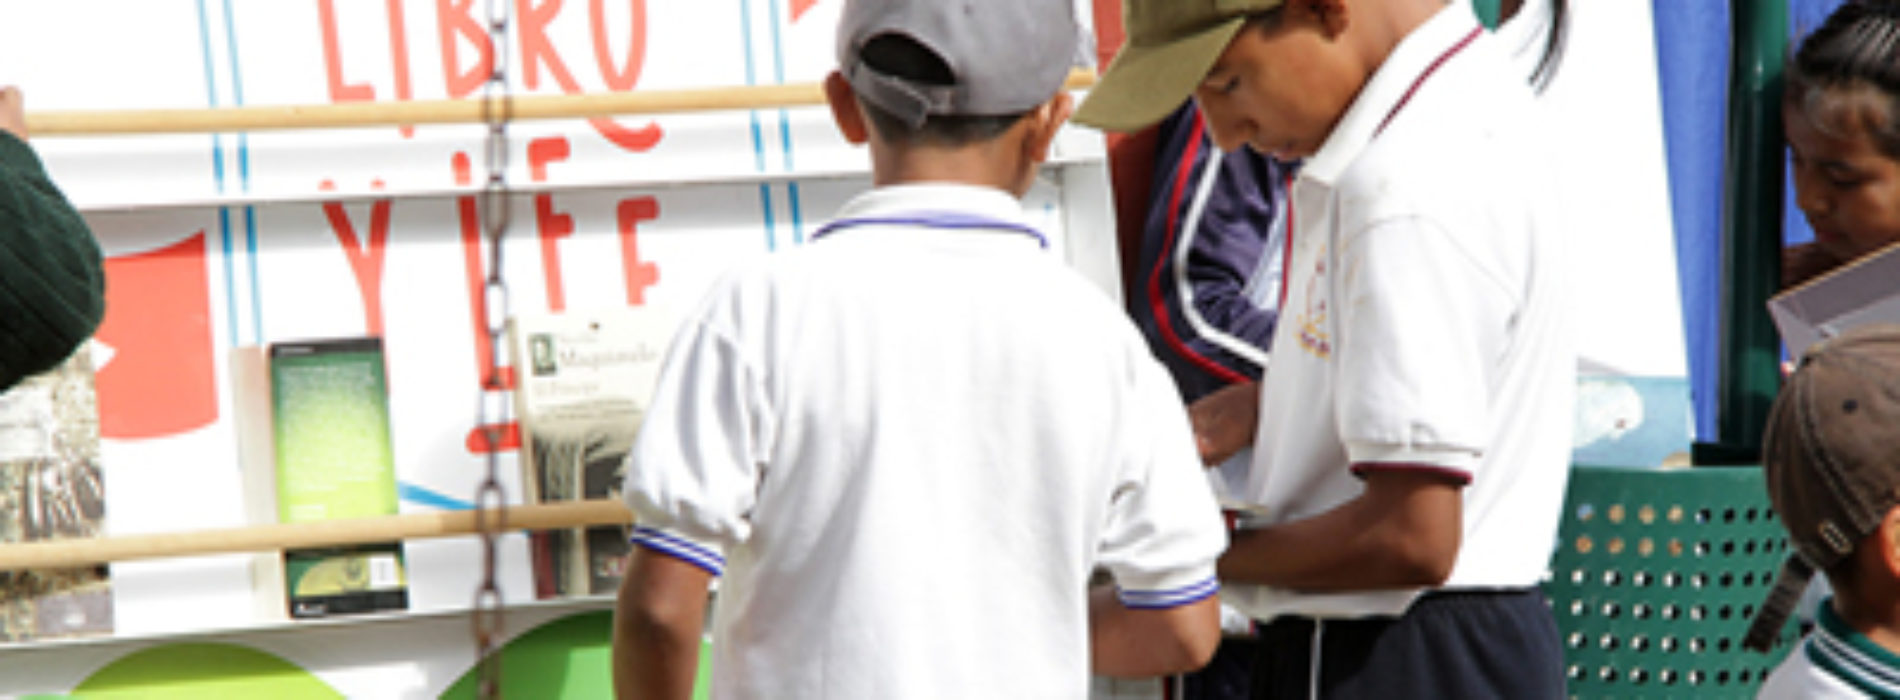 Impulsa Gobierno de Oaxaca Programa “Leer es un placer”